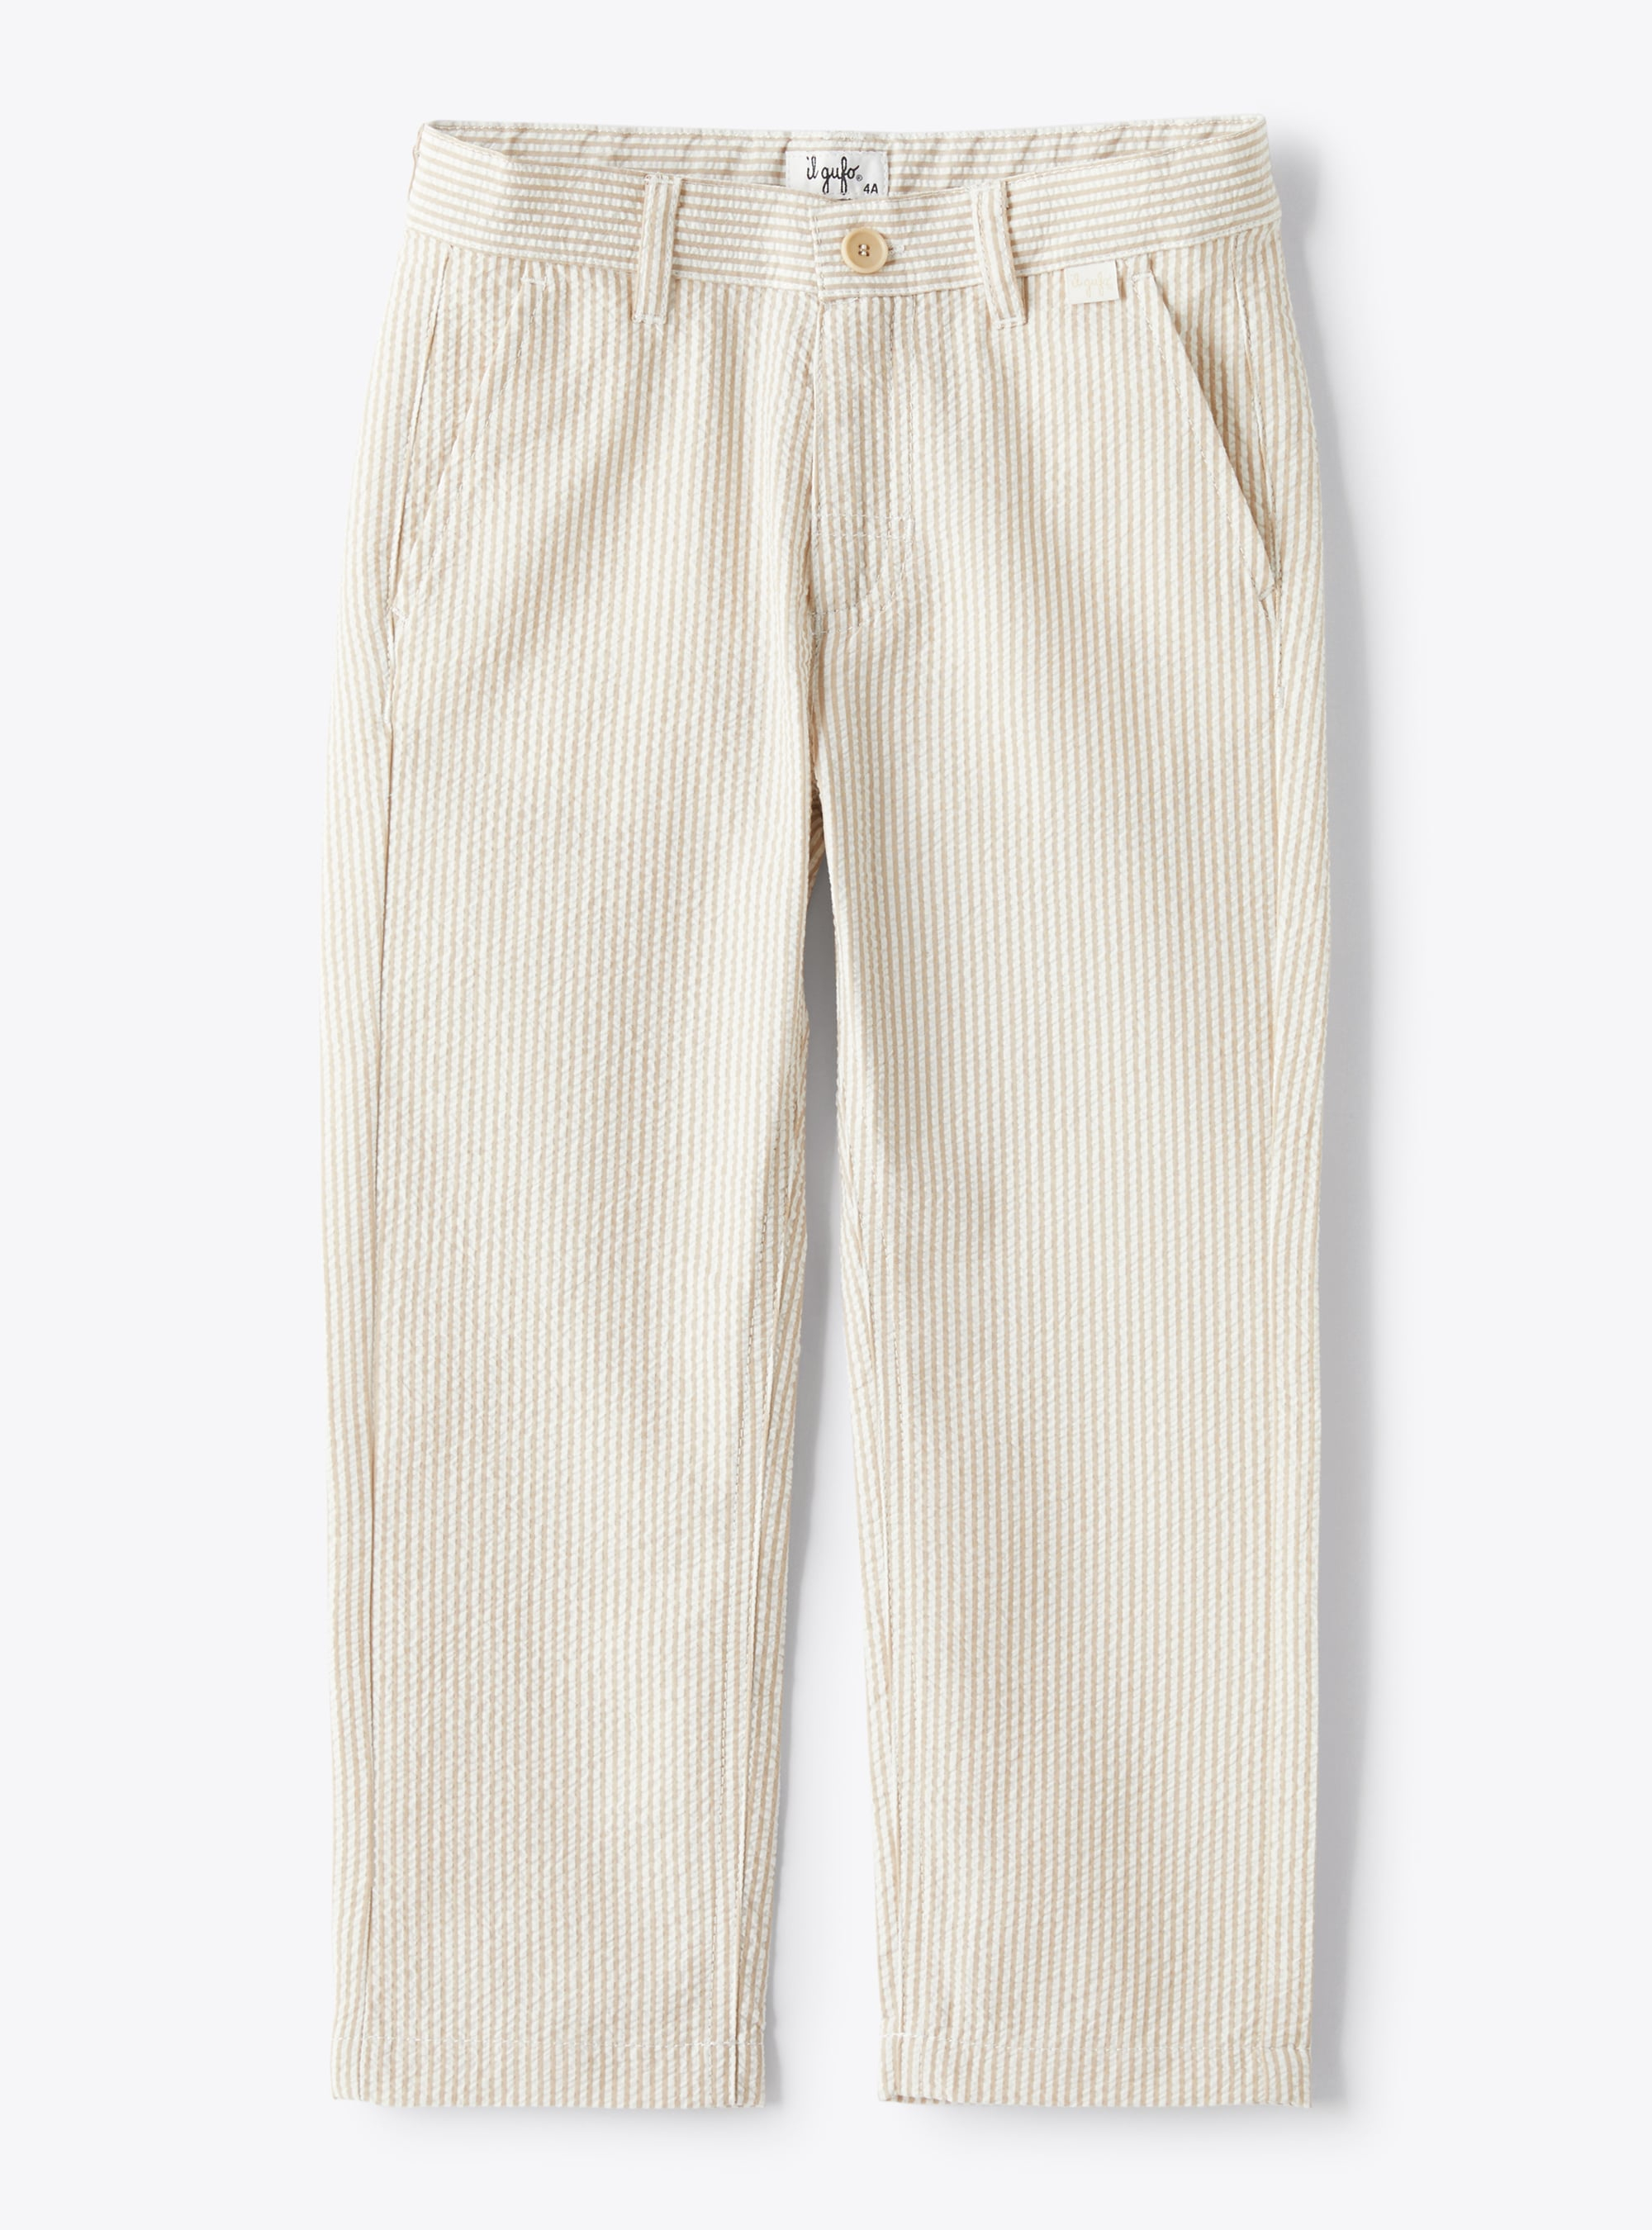 Long trousers in beige-&-white striped seersucker - Beige | Il Gufo